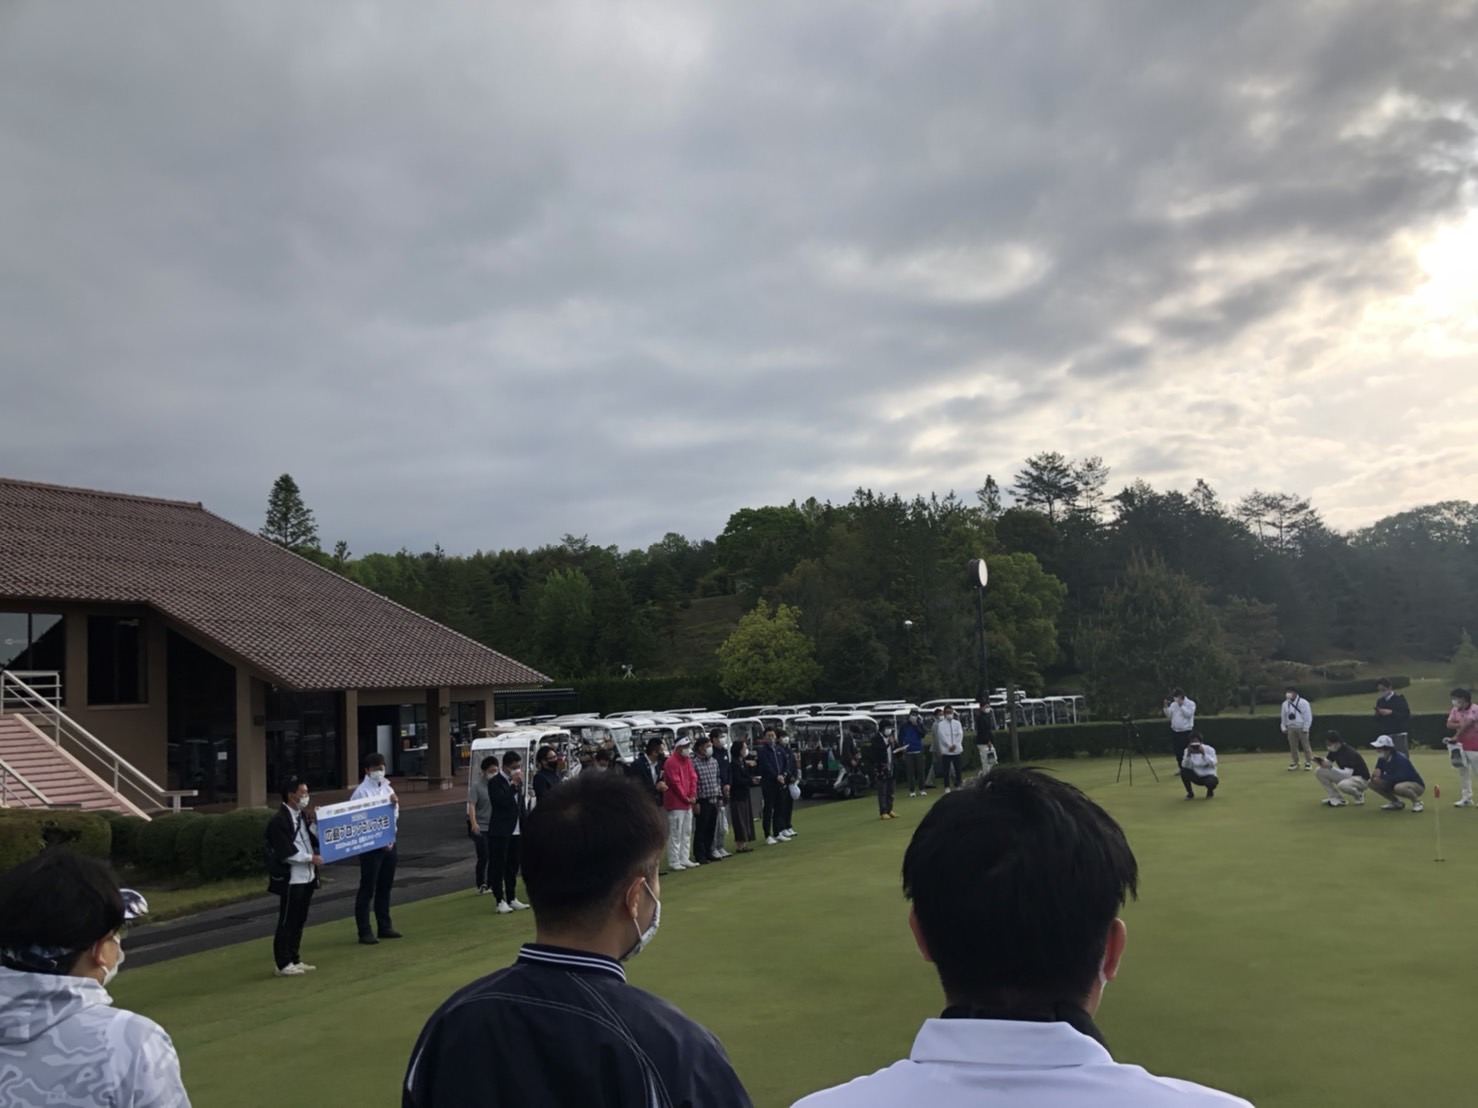 広島ブロックゴルフ大会